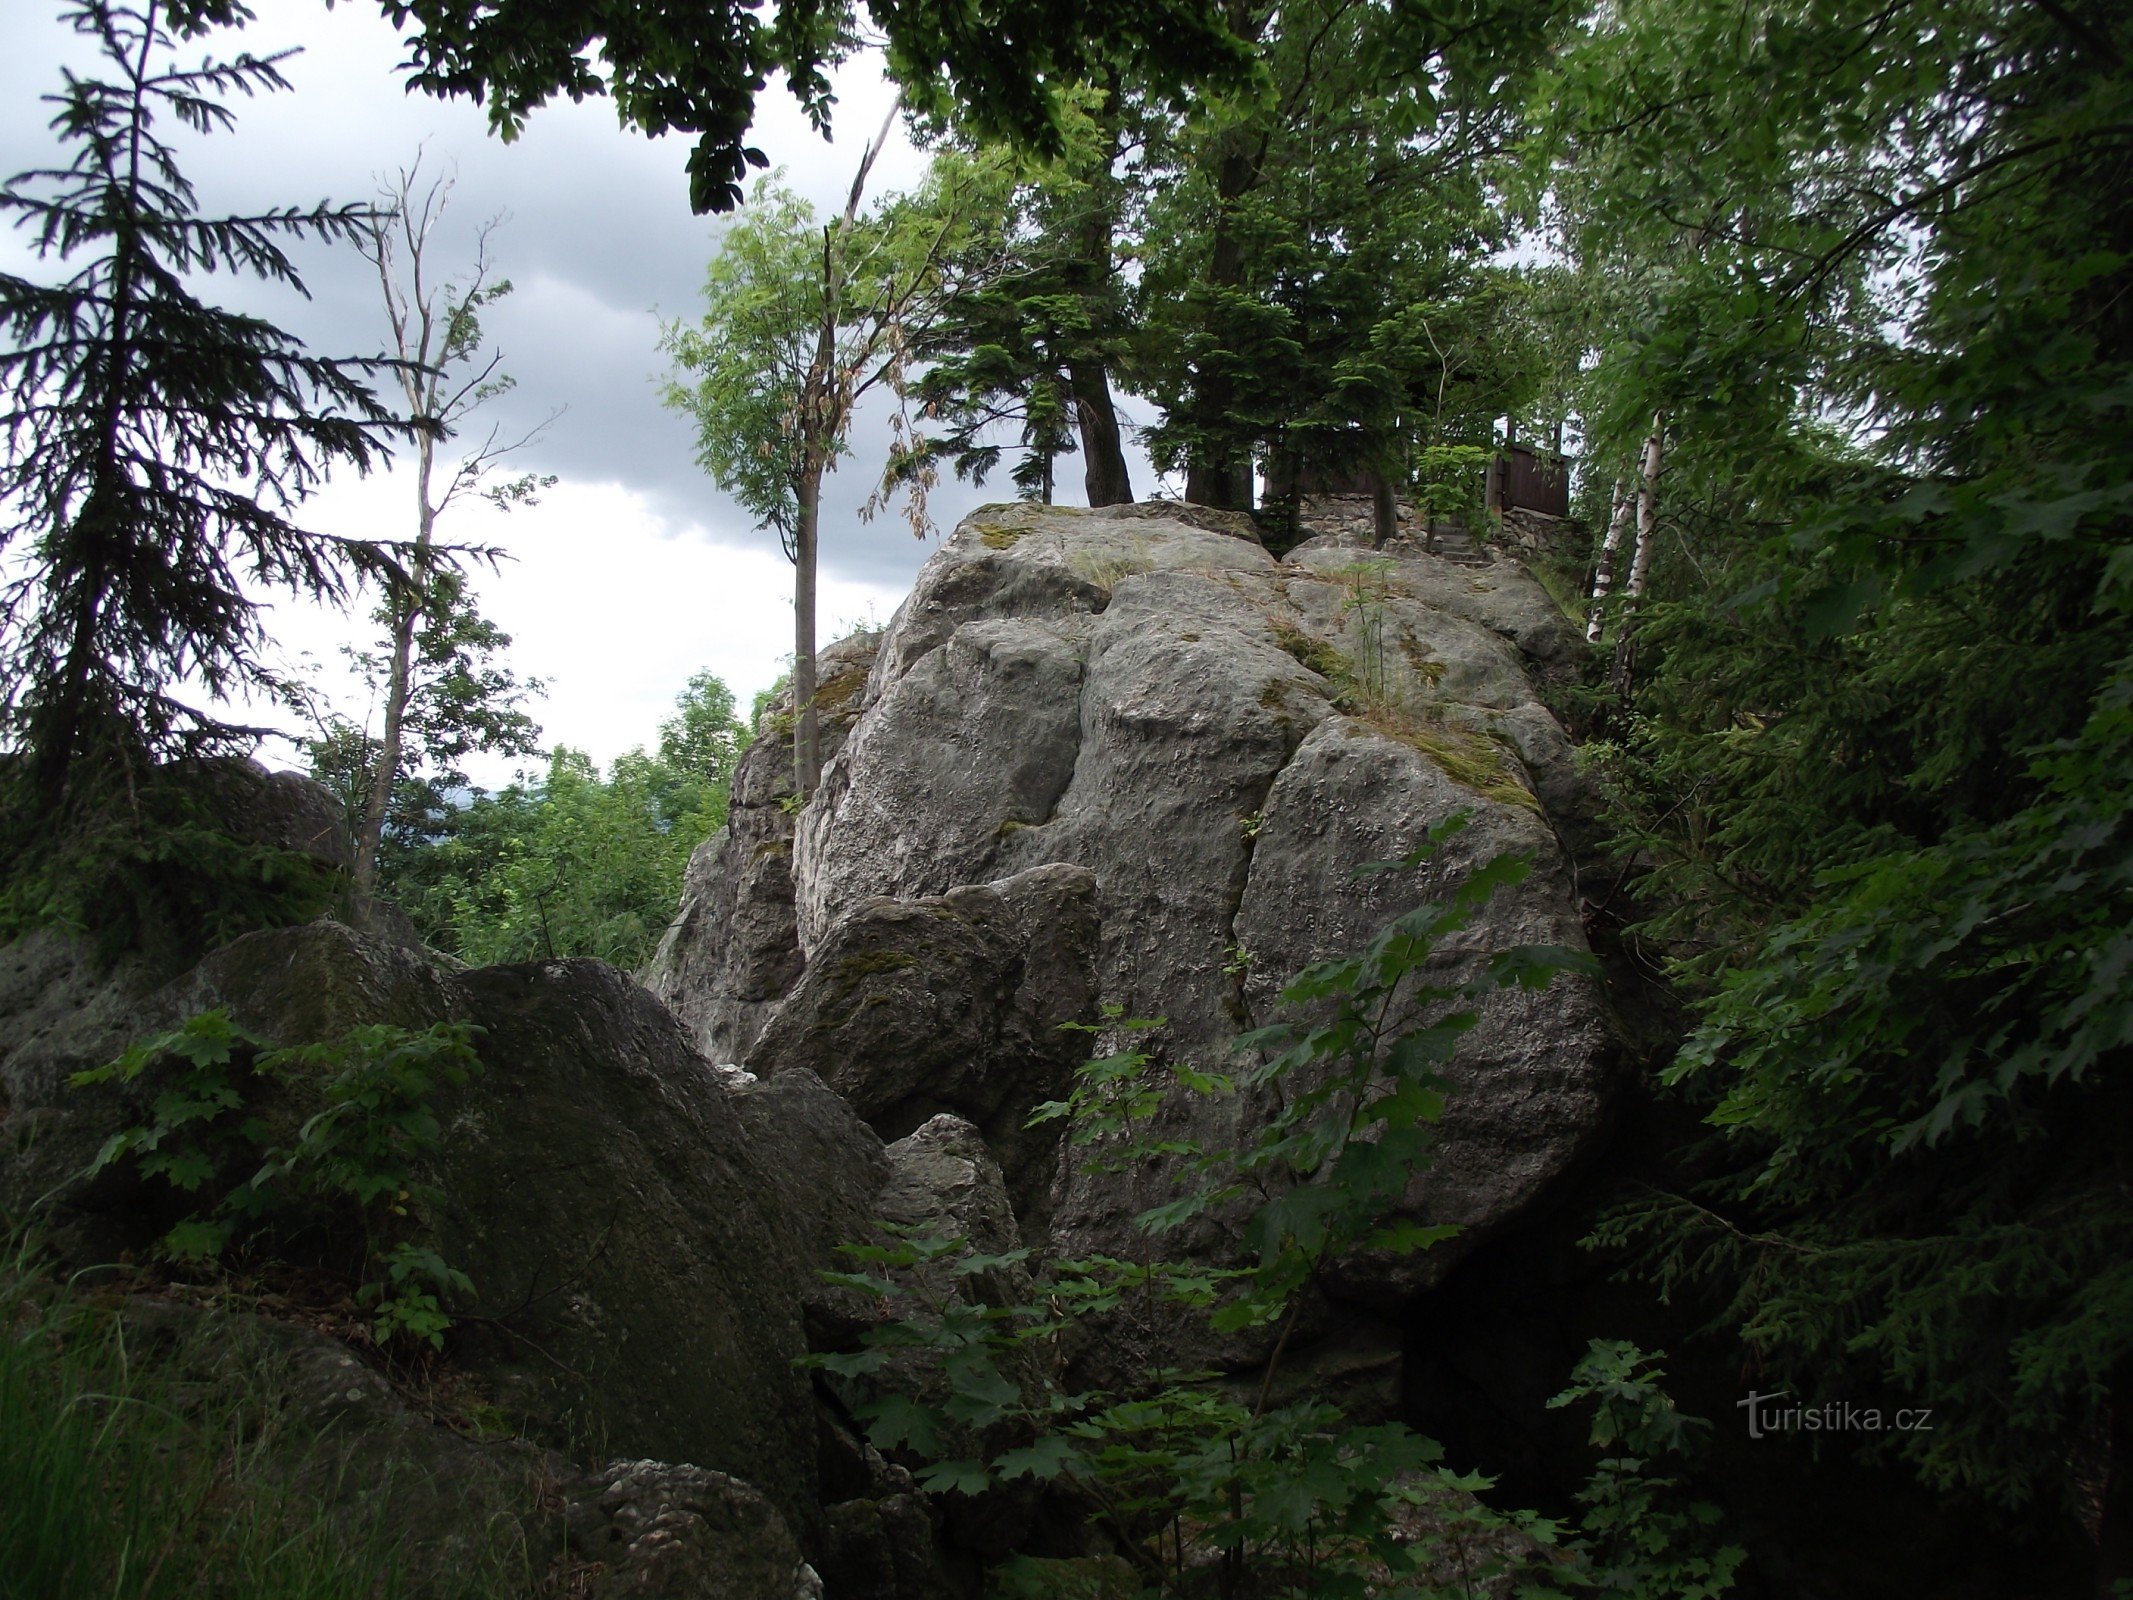 Šumperk / Bratrušov - City rocks or three in one (rocks, lookout and peak)